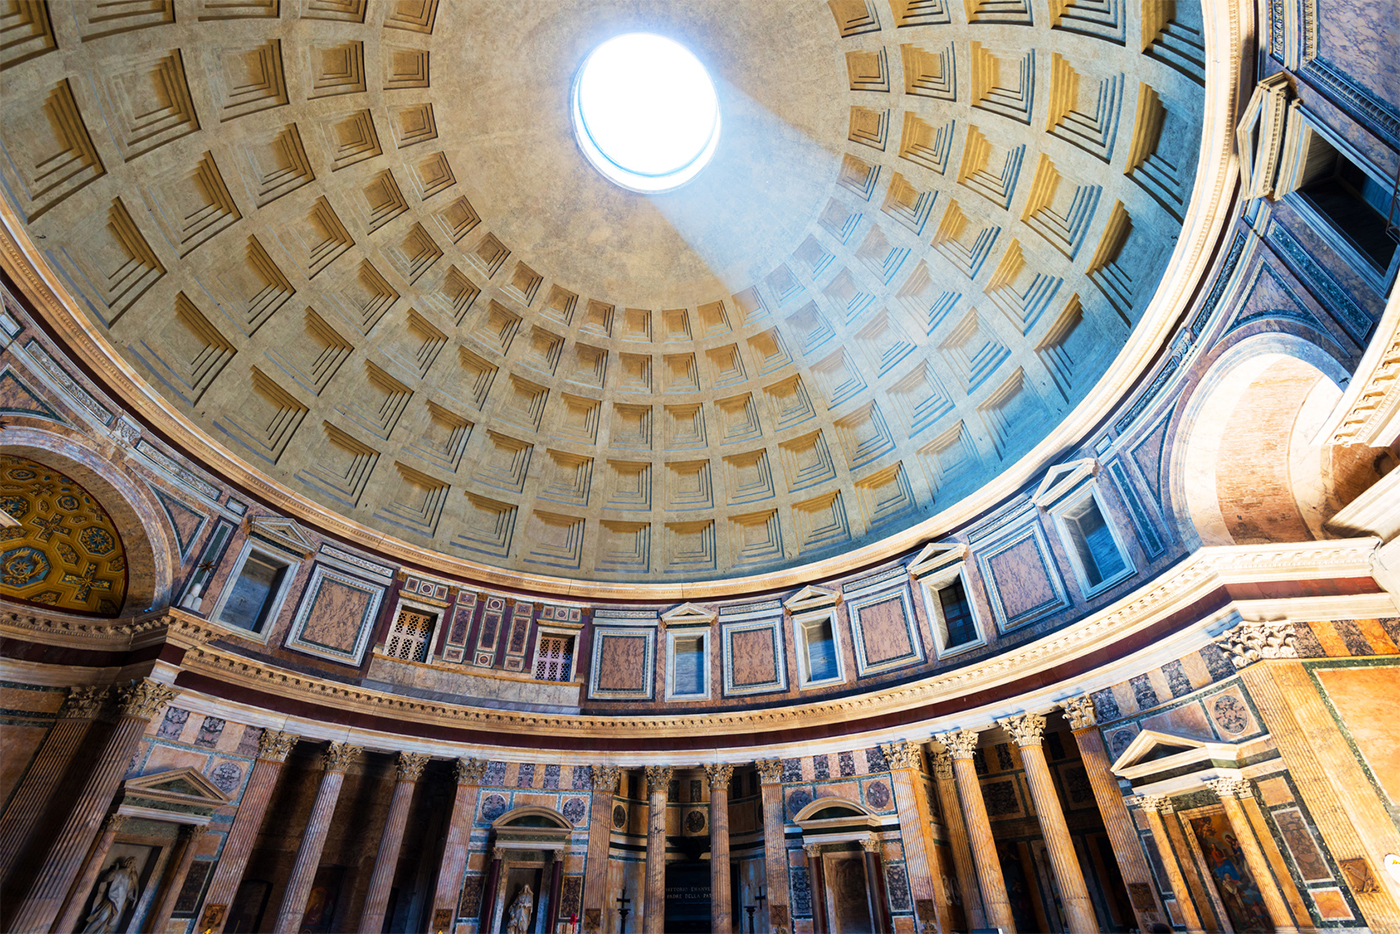 La impresionante perspectiva de la cúpula del Panteón con la luz que se fltra a través del oculus